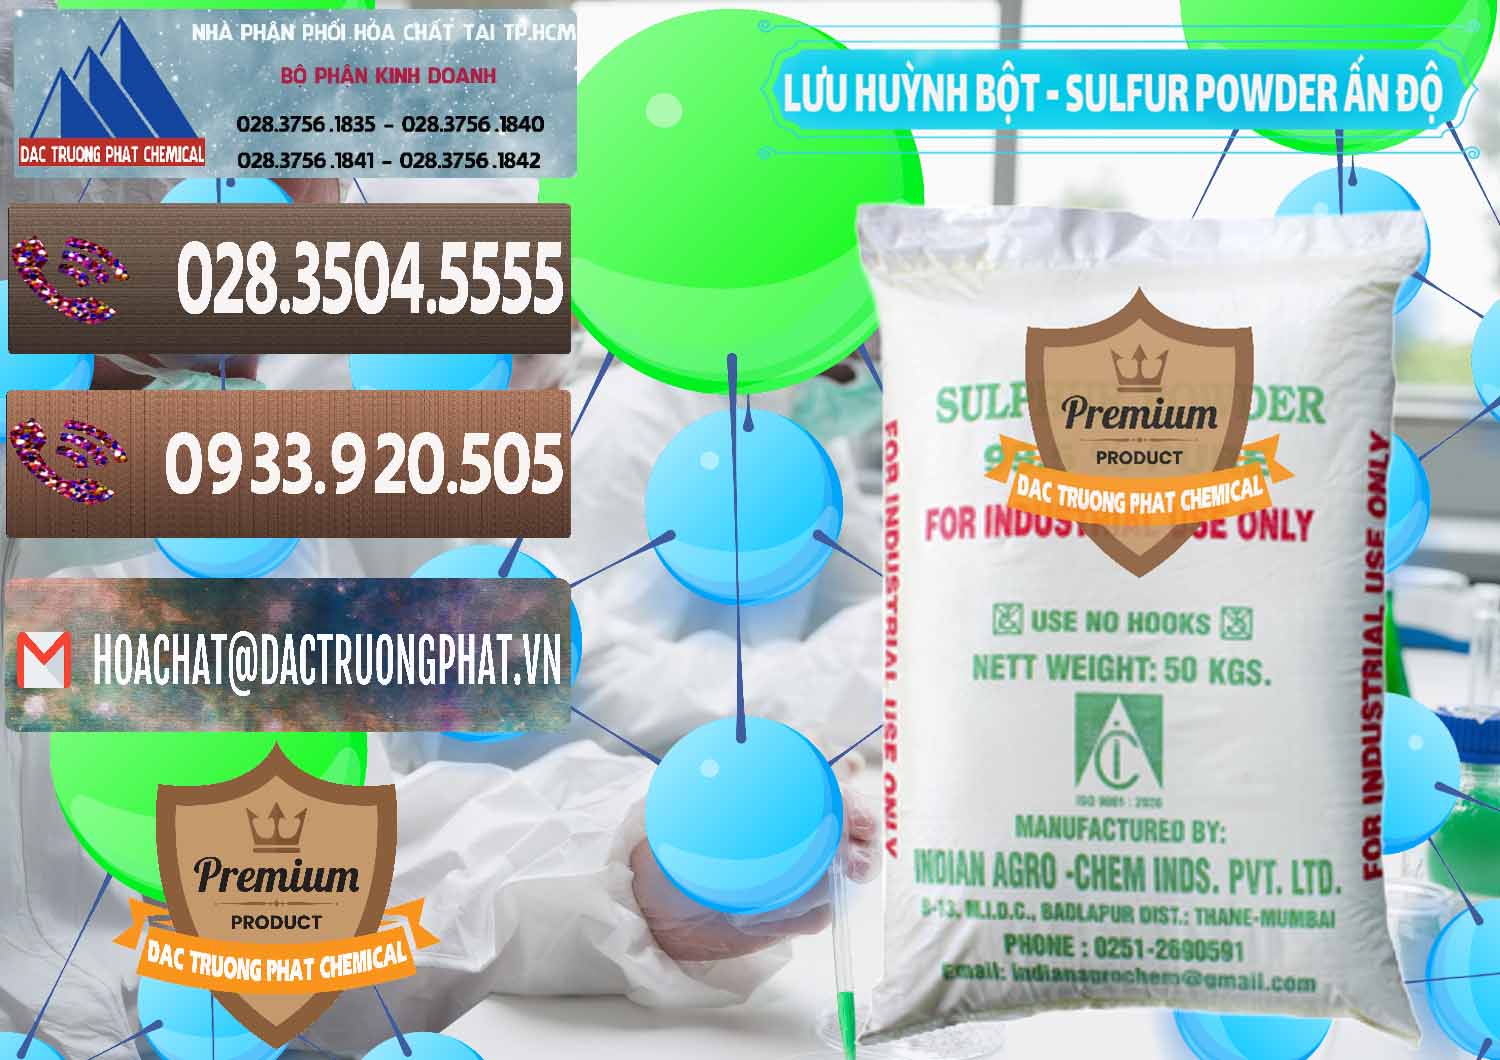 Cty chuyên bán & cung cấp Lưu huỳnh Bột - Sulfur Powder Ấn Độ India - 0347 - Nơi chuyên kinh doanh & cung cấp hóa chất tại TP.HCM - hoachatviet.net